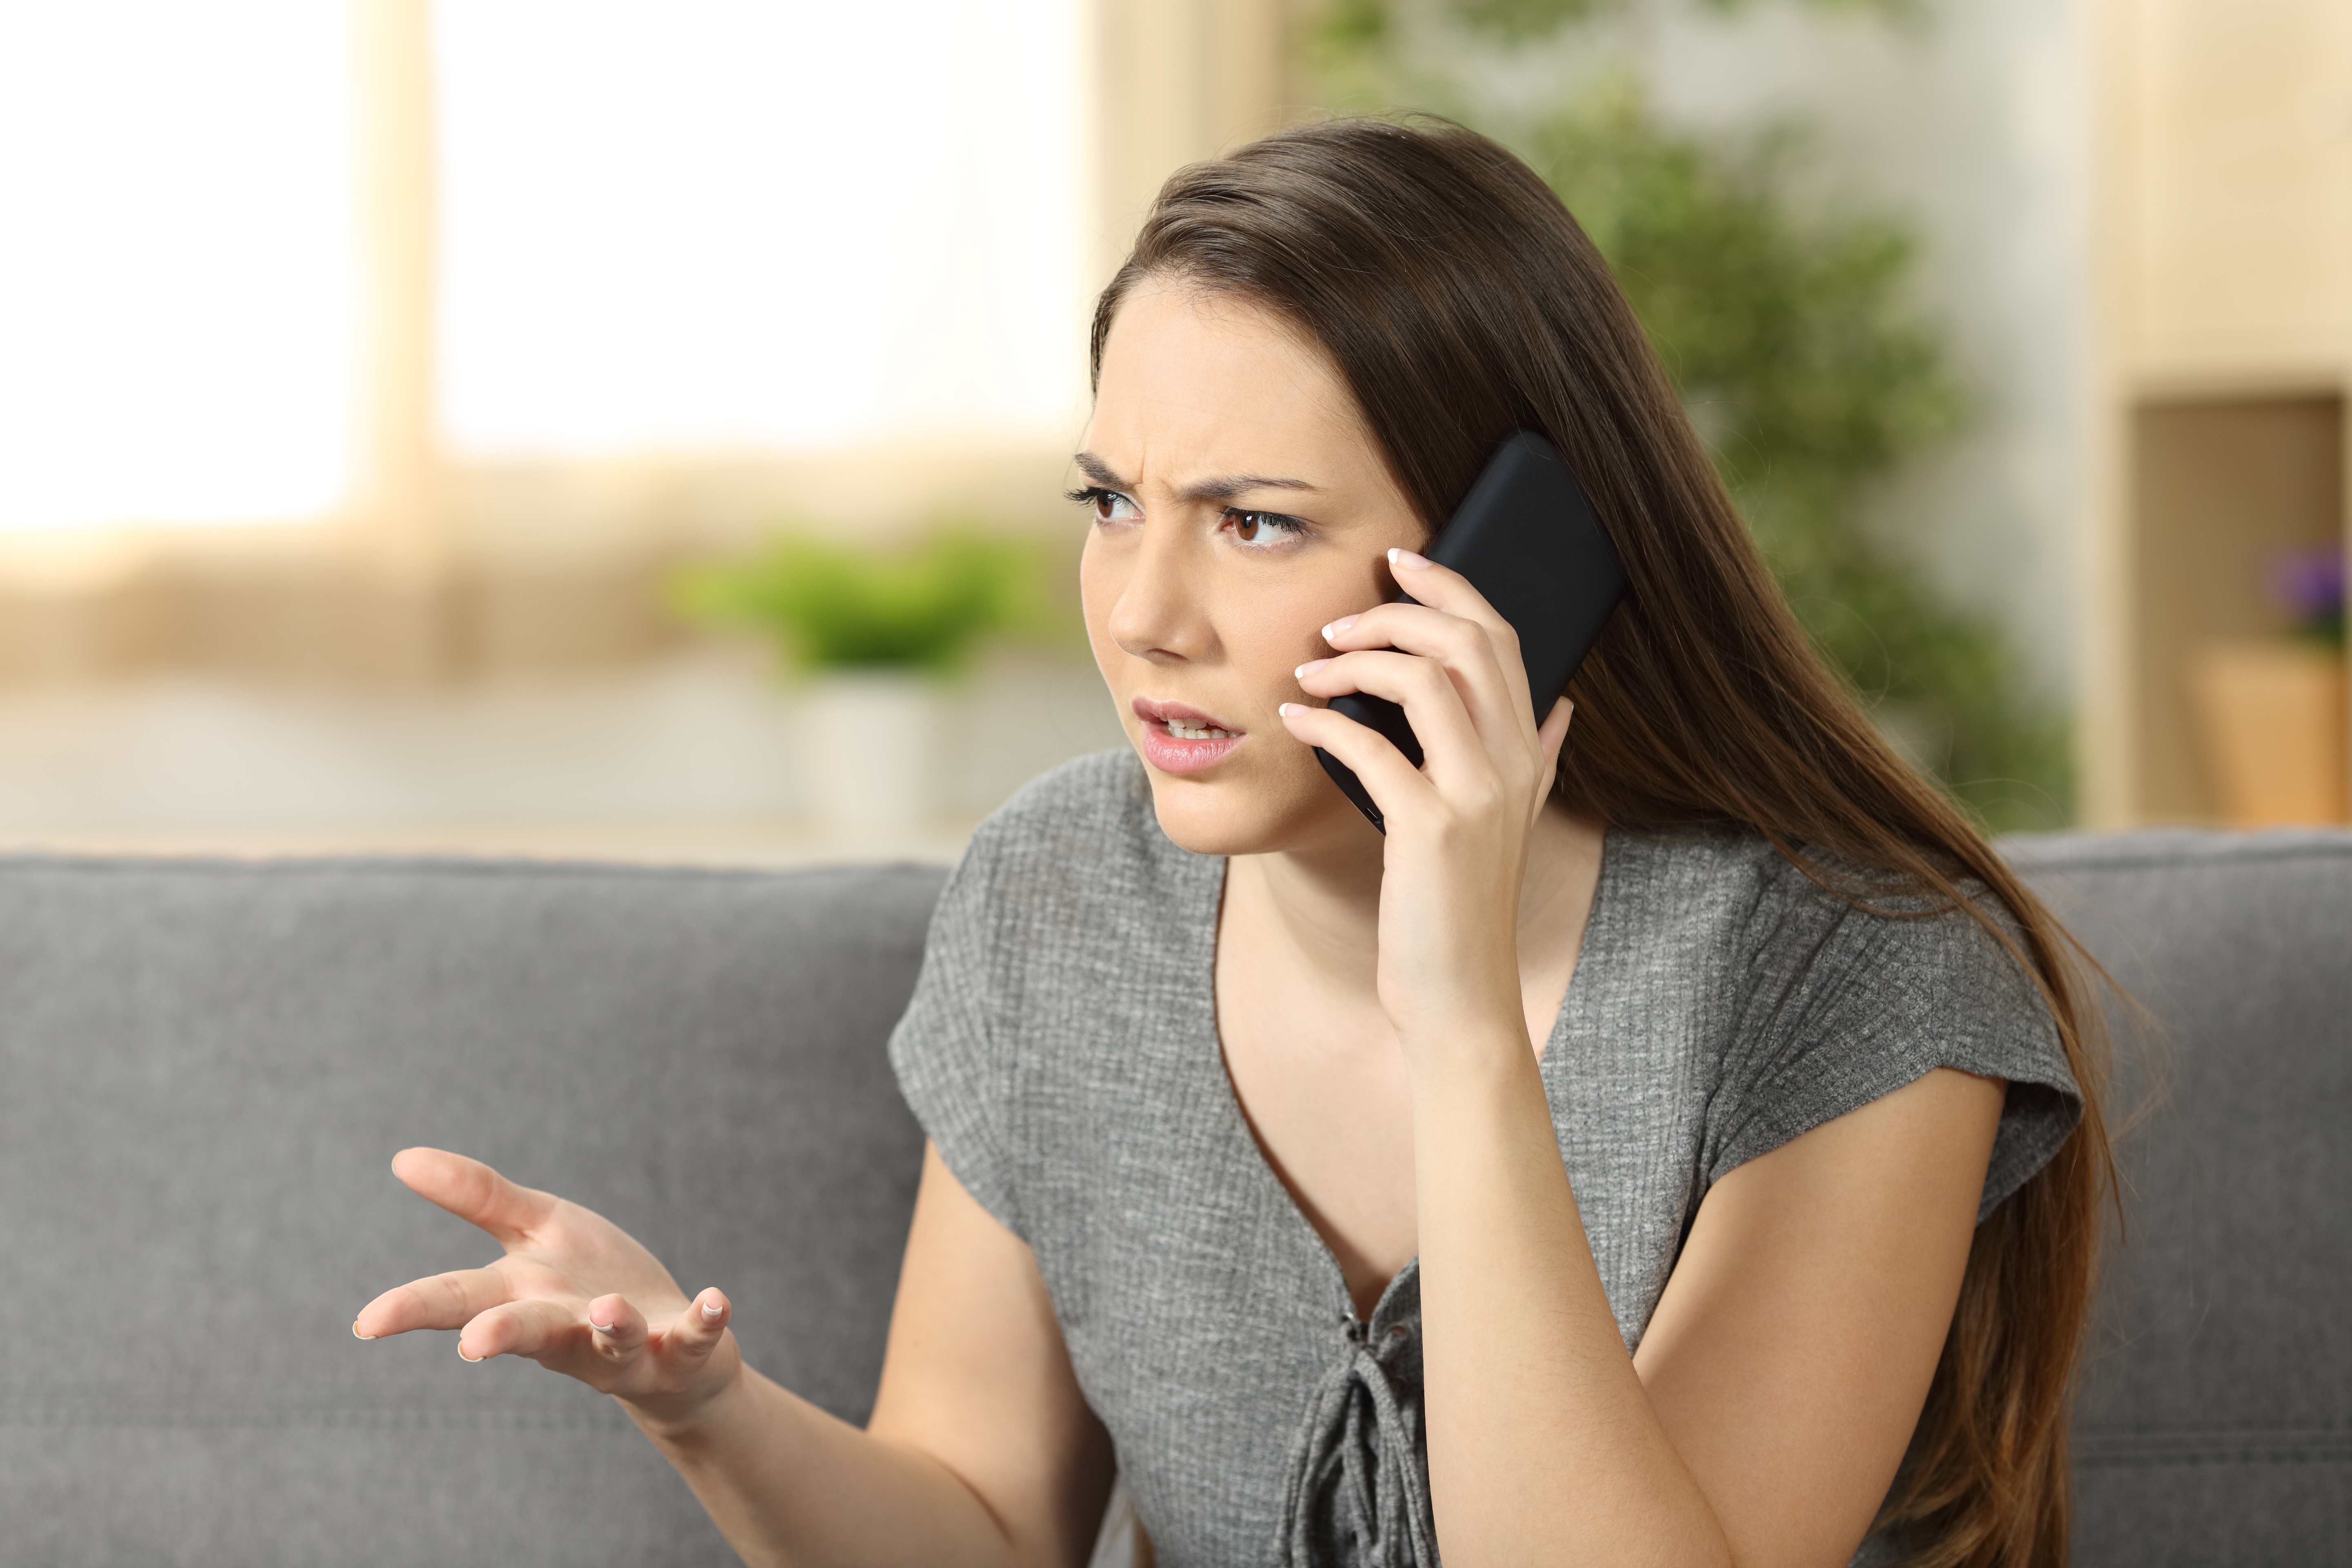 Eine wütende Frau, die in ihr Telefon spricht | Quelle: Shutterstock